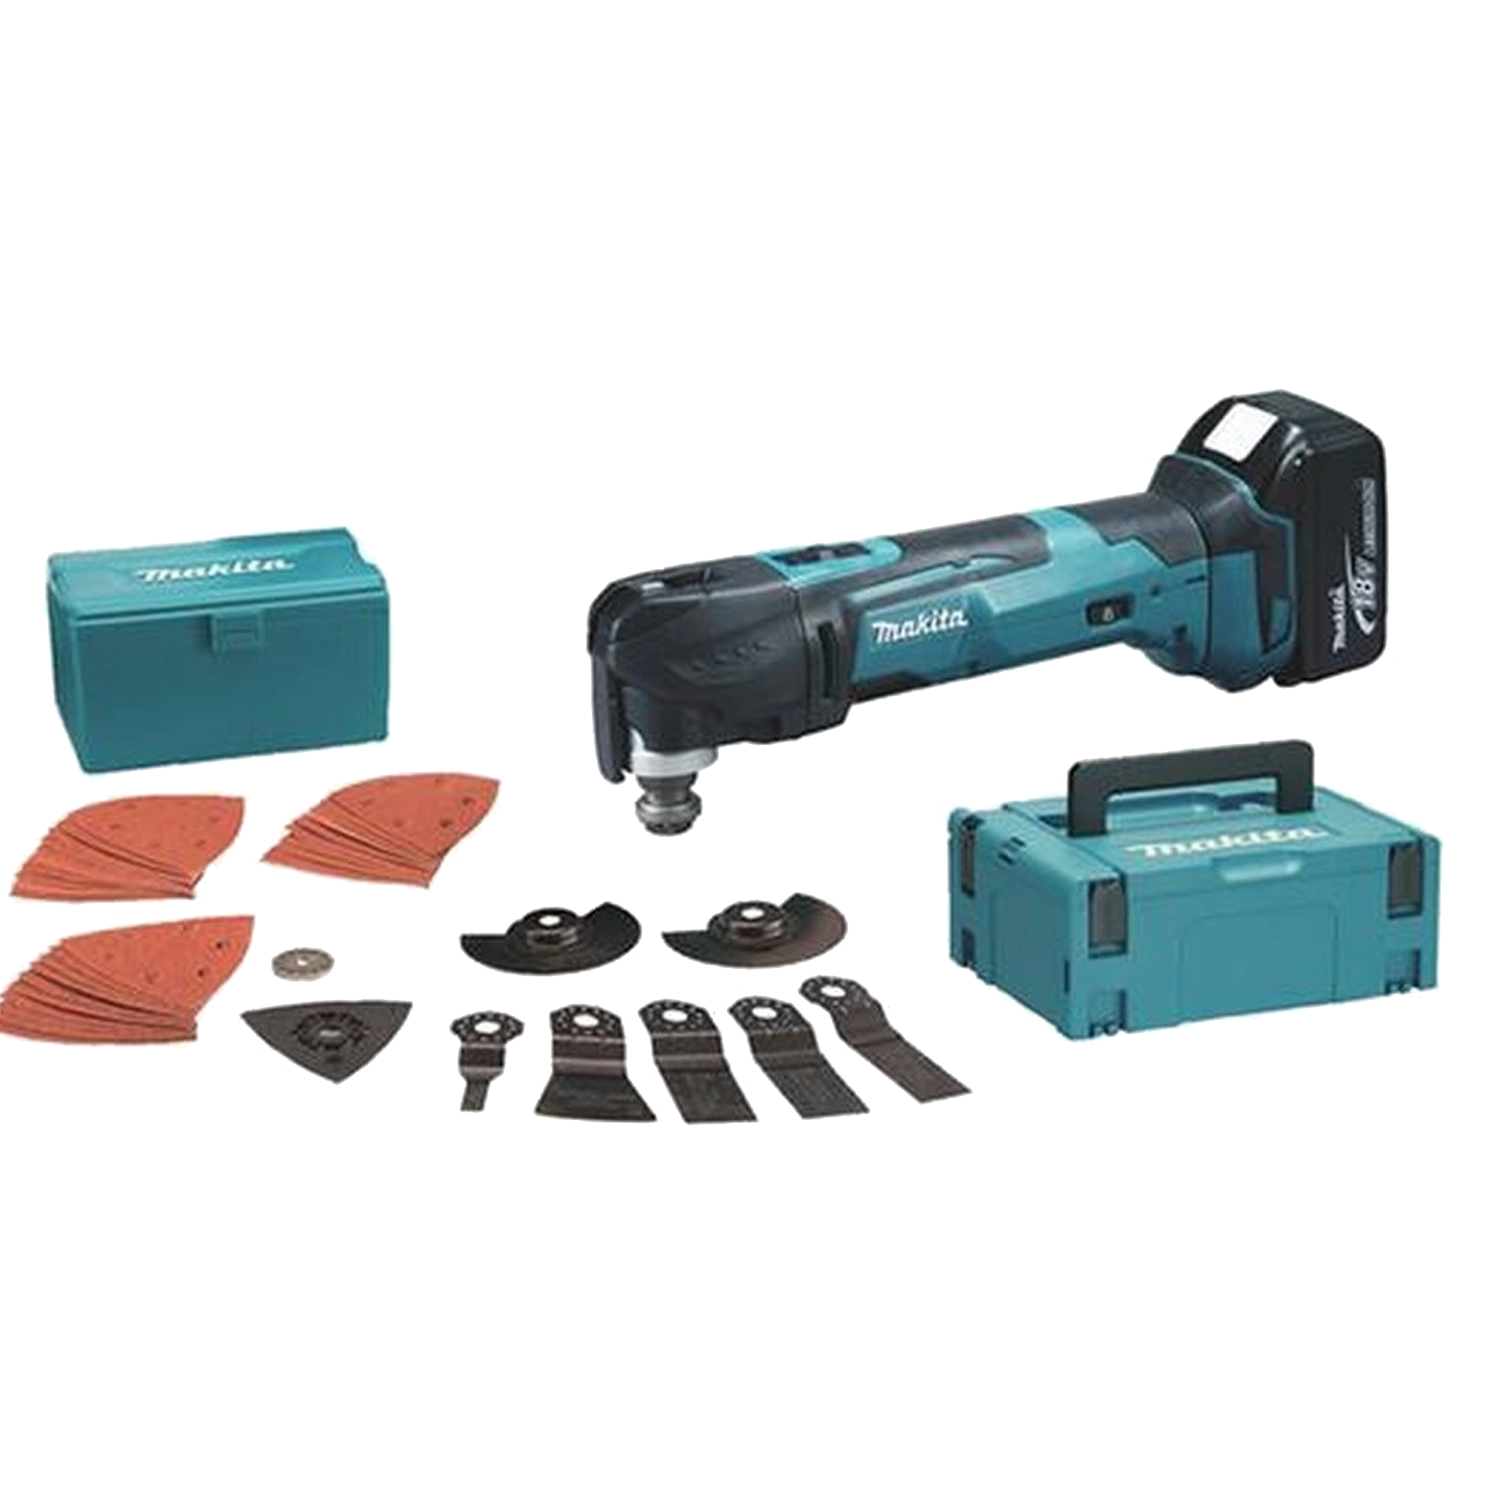 Makita Multitool: Compact, blauw gereedschap met zwart handvat, snelwissel systeem voor accessoires, twee krachtige accu's, geleverd in een robuuste Makita-koffer.